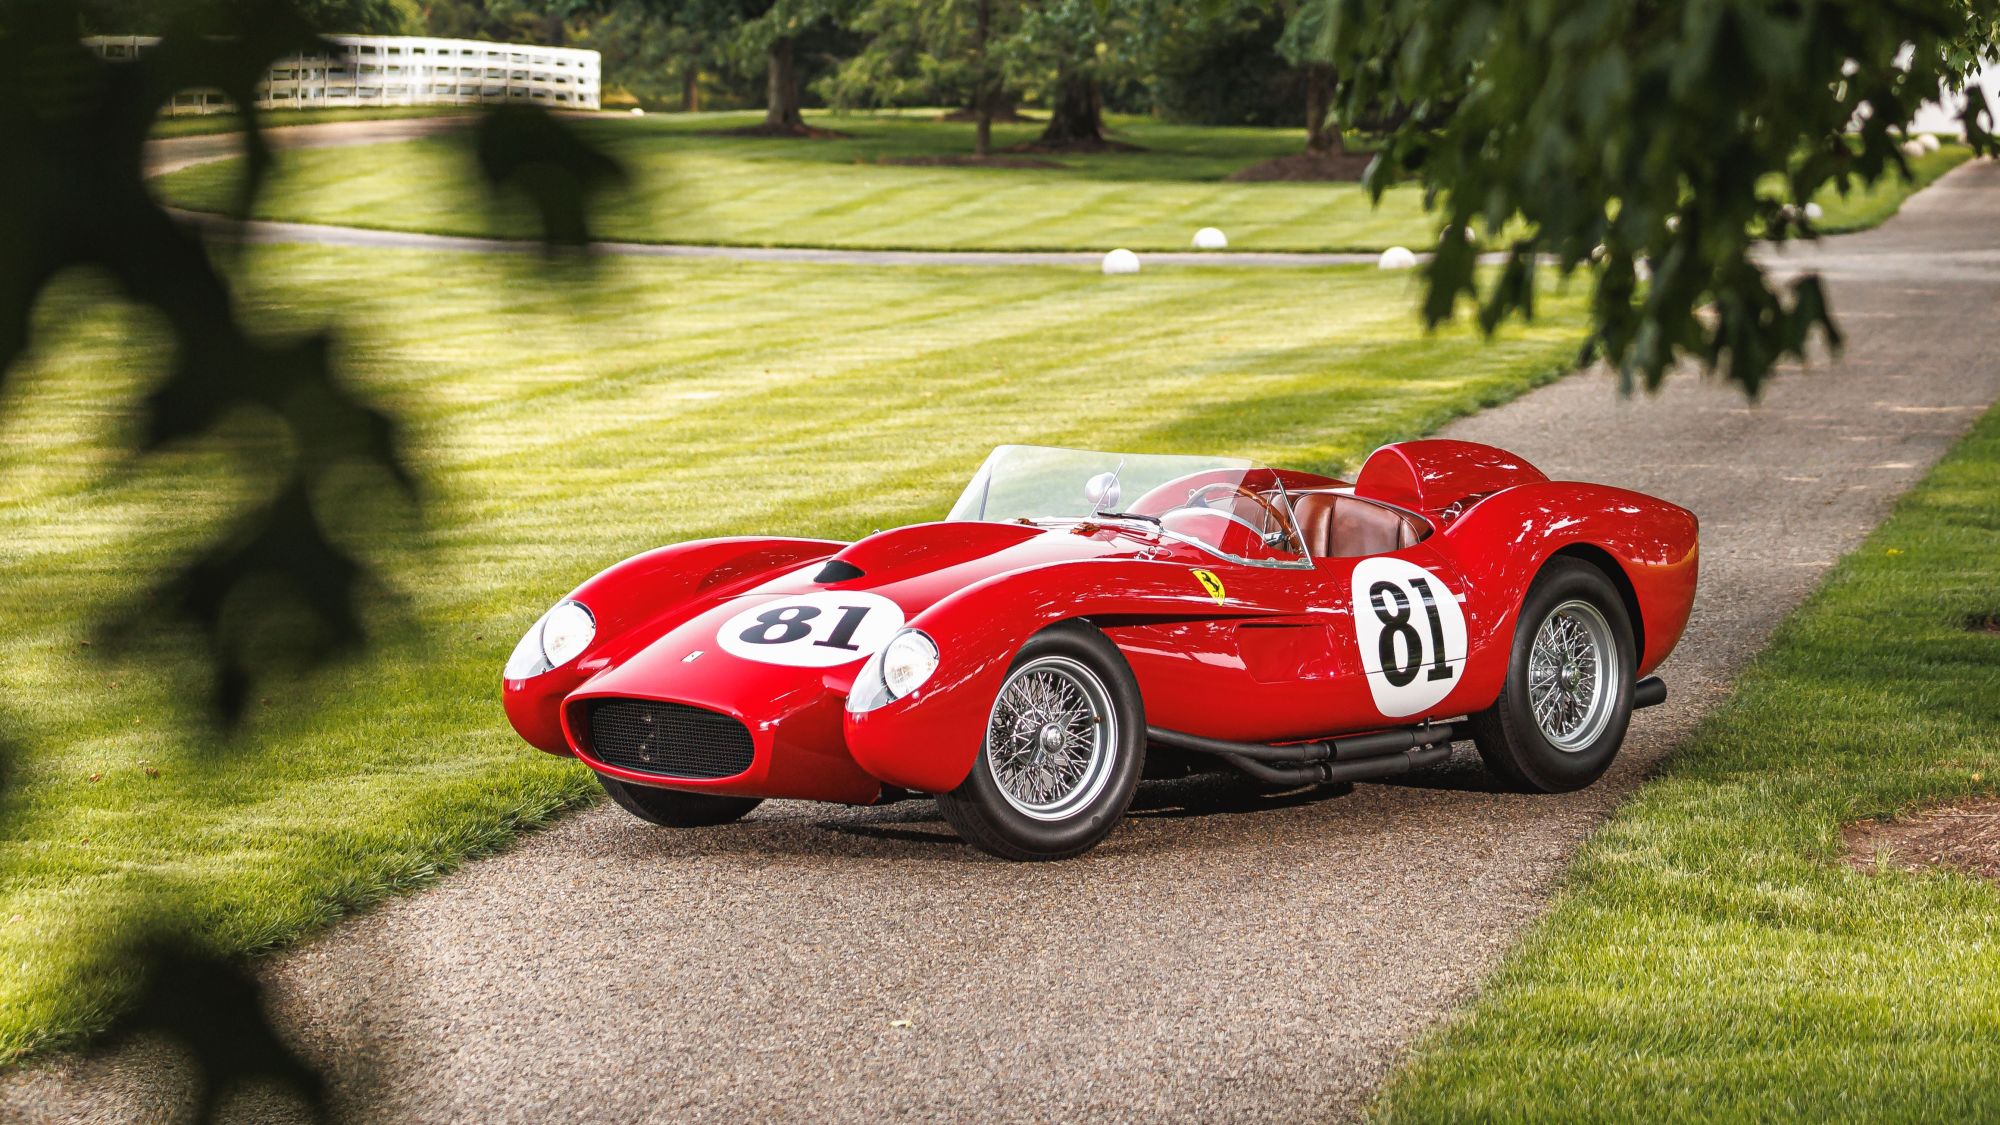 Do aukce putuje jedno z nejlepších a nejdražších aut na světě. Ferrari 250 Testa Rossa bude v únoru znát svého majitele